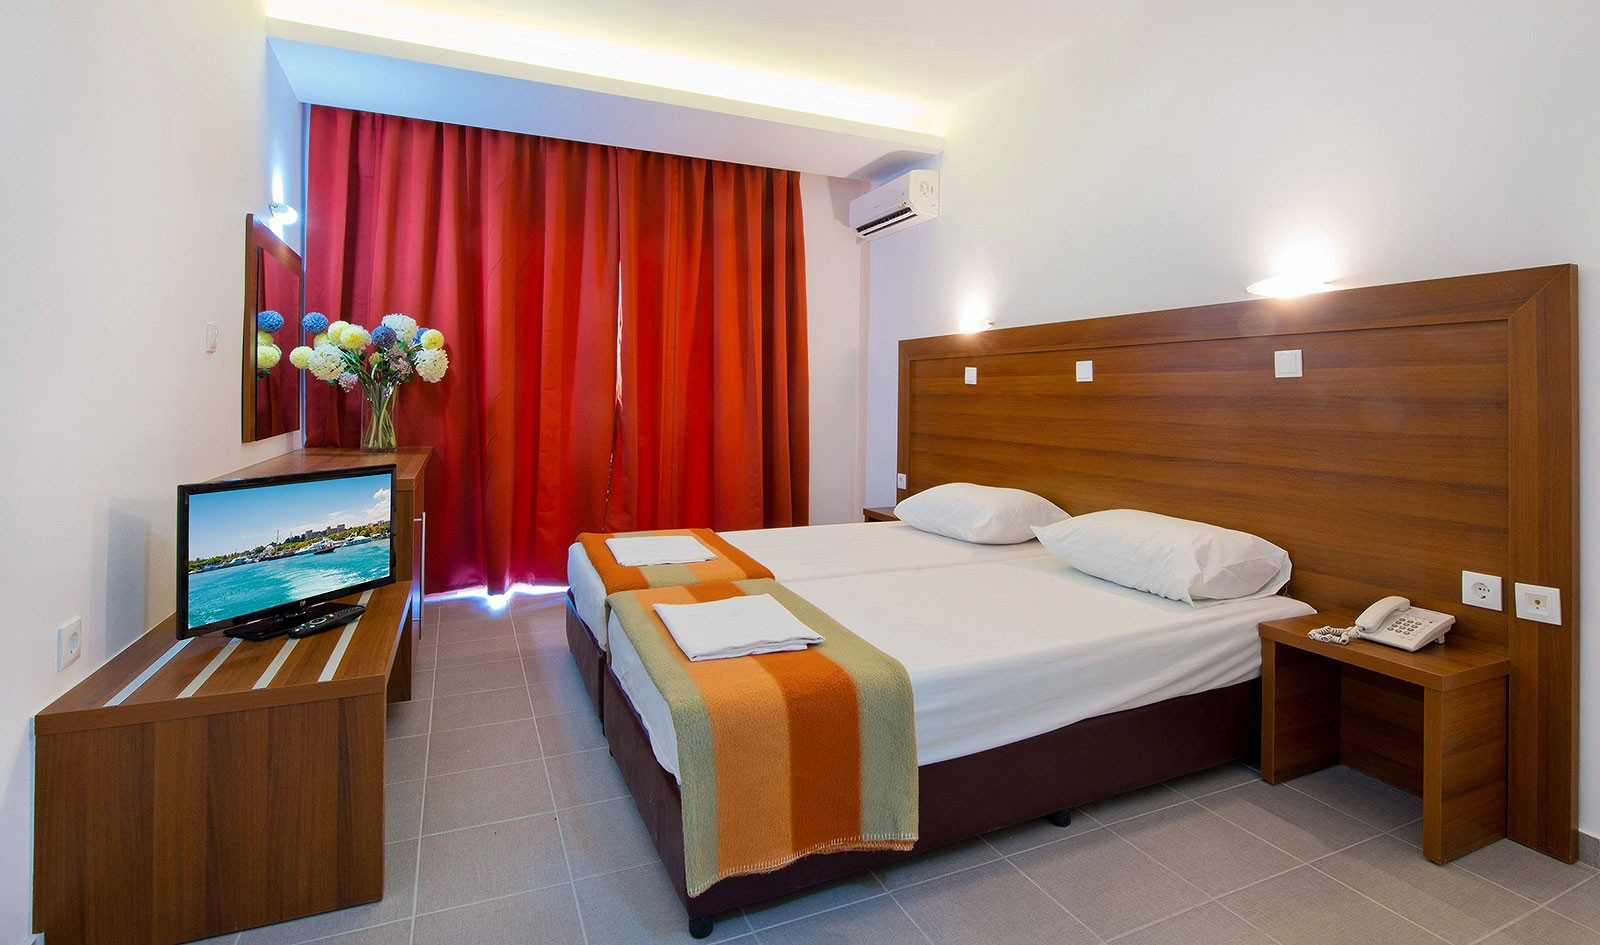 Μεγάλη πτώση στις τιμές ξενοδοχείων στη Λάρισα – Αντέχουν περισσότερο Βόλος και Καλαμπάκα